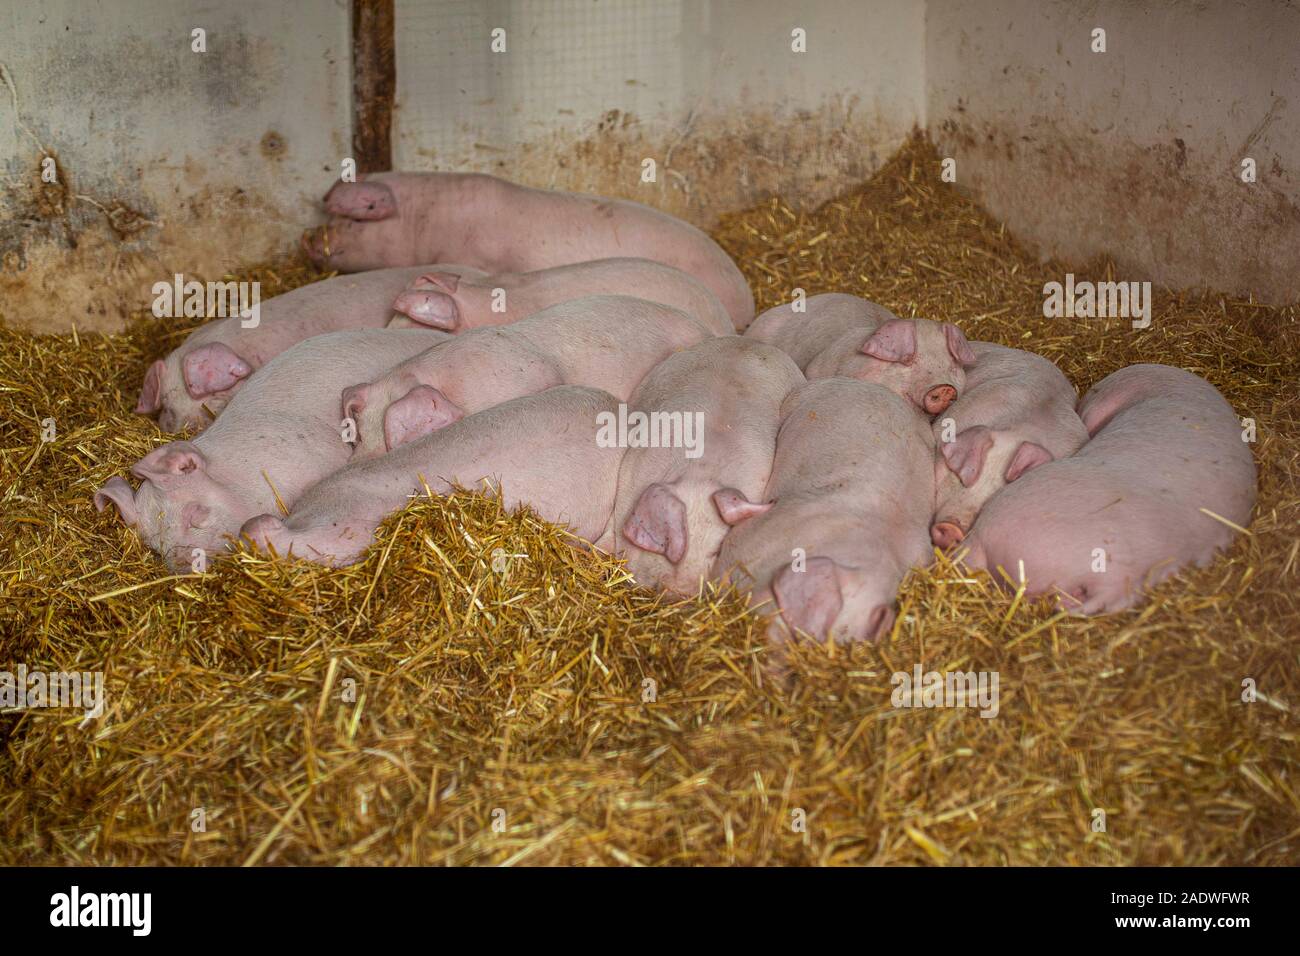 Cardiff, País de Gales, Reino Unido. El 5 de diciembre de 2019. Los cerdos jóvenes acurrucarse juntos para mantener caliente como duermen en una granja estable durante una ola de frío en gran parte del Reino Unido. Crédito: Mark Hawkins/Alamy Live News Foto de stock